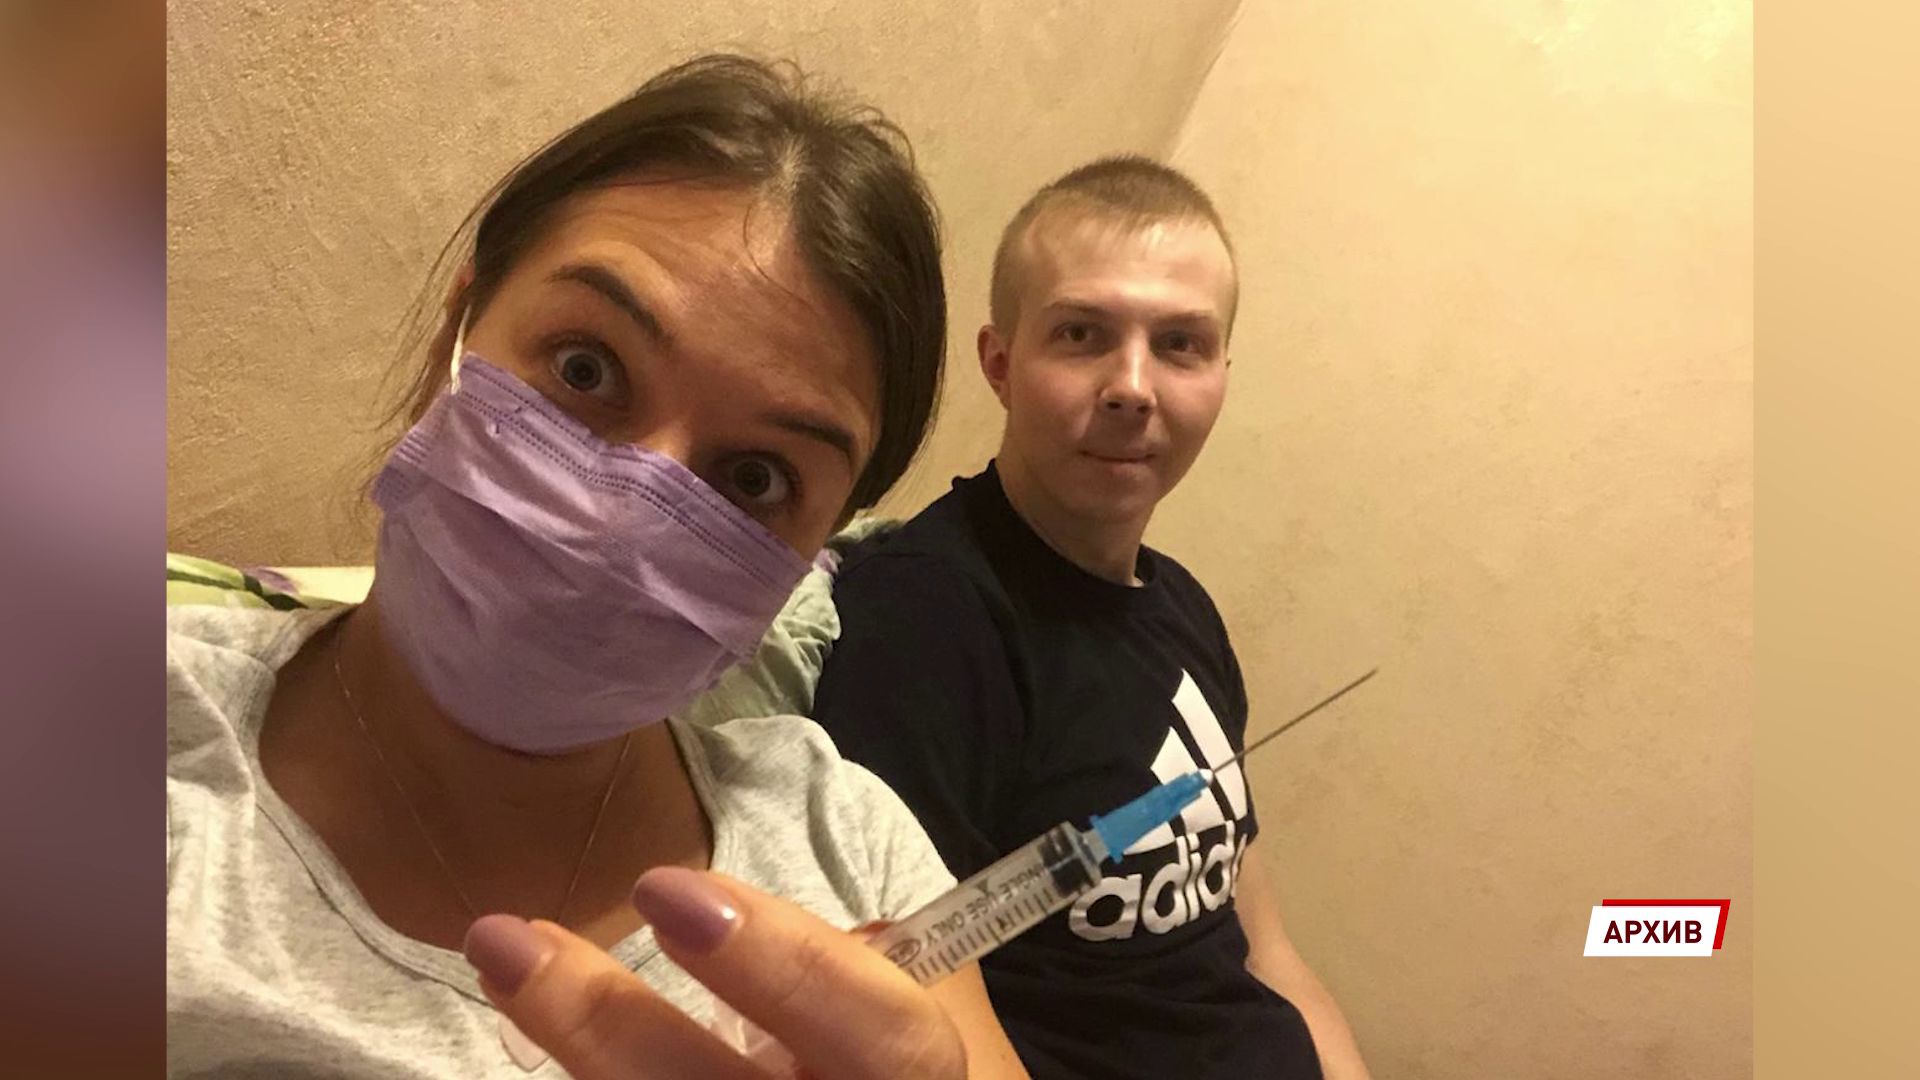 Нужна помощь: Ивану Леонову не хватает десяти миллионов на лечение лейкоза